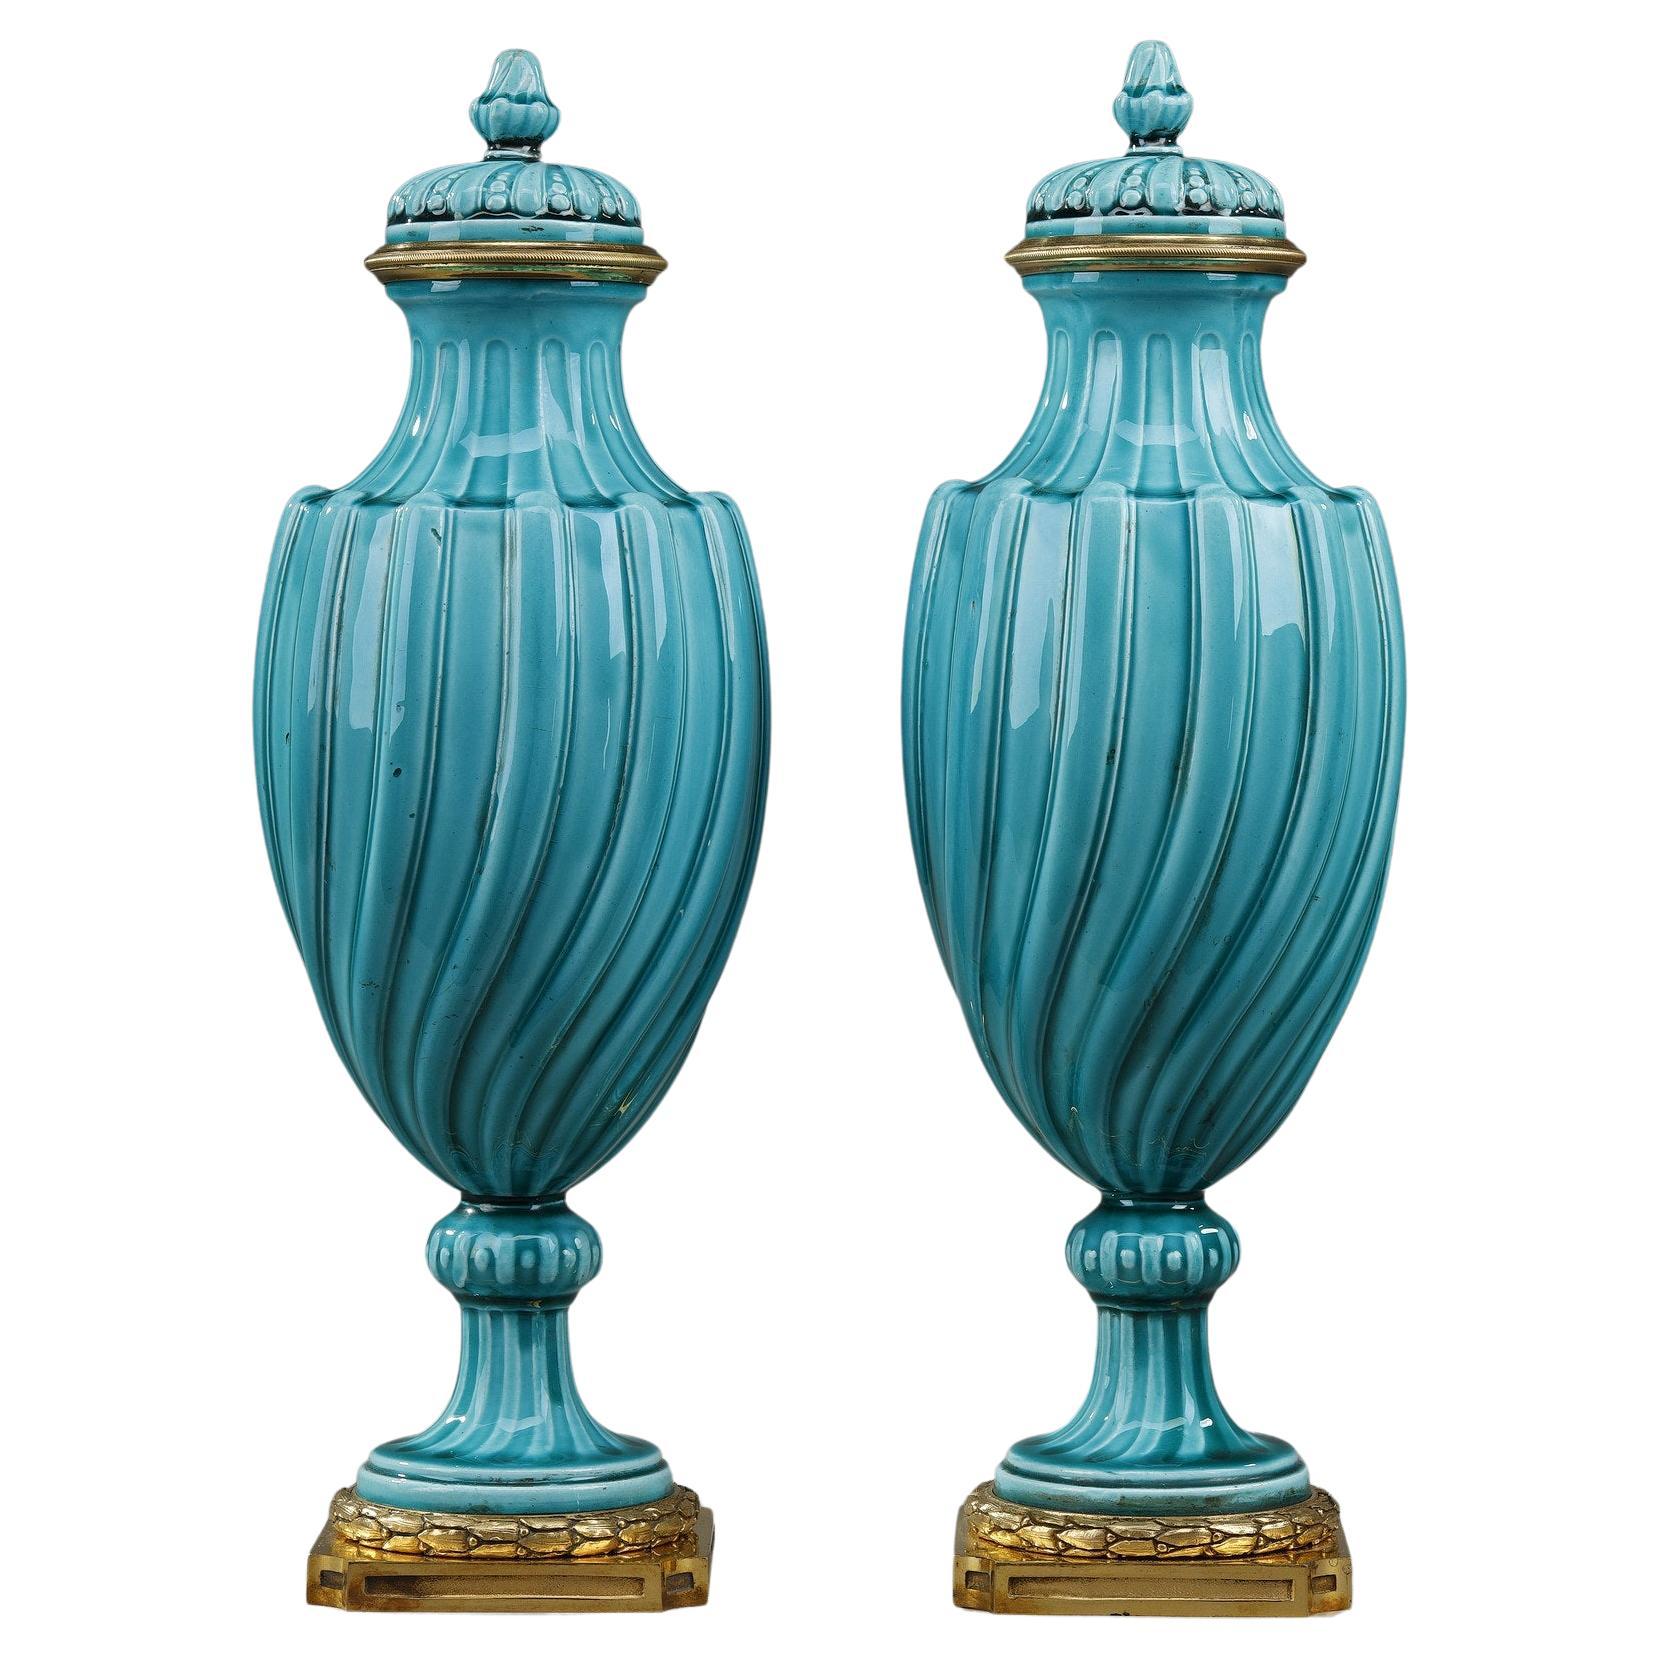 Paire de vases de style Louis XVI recouverts de céramique